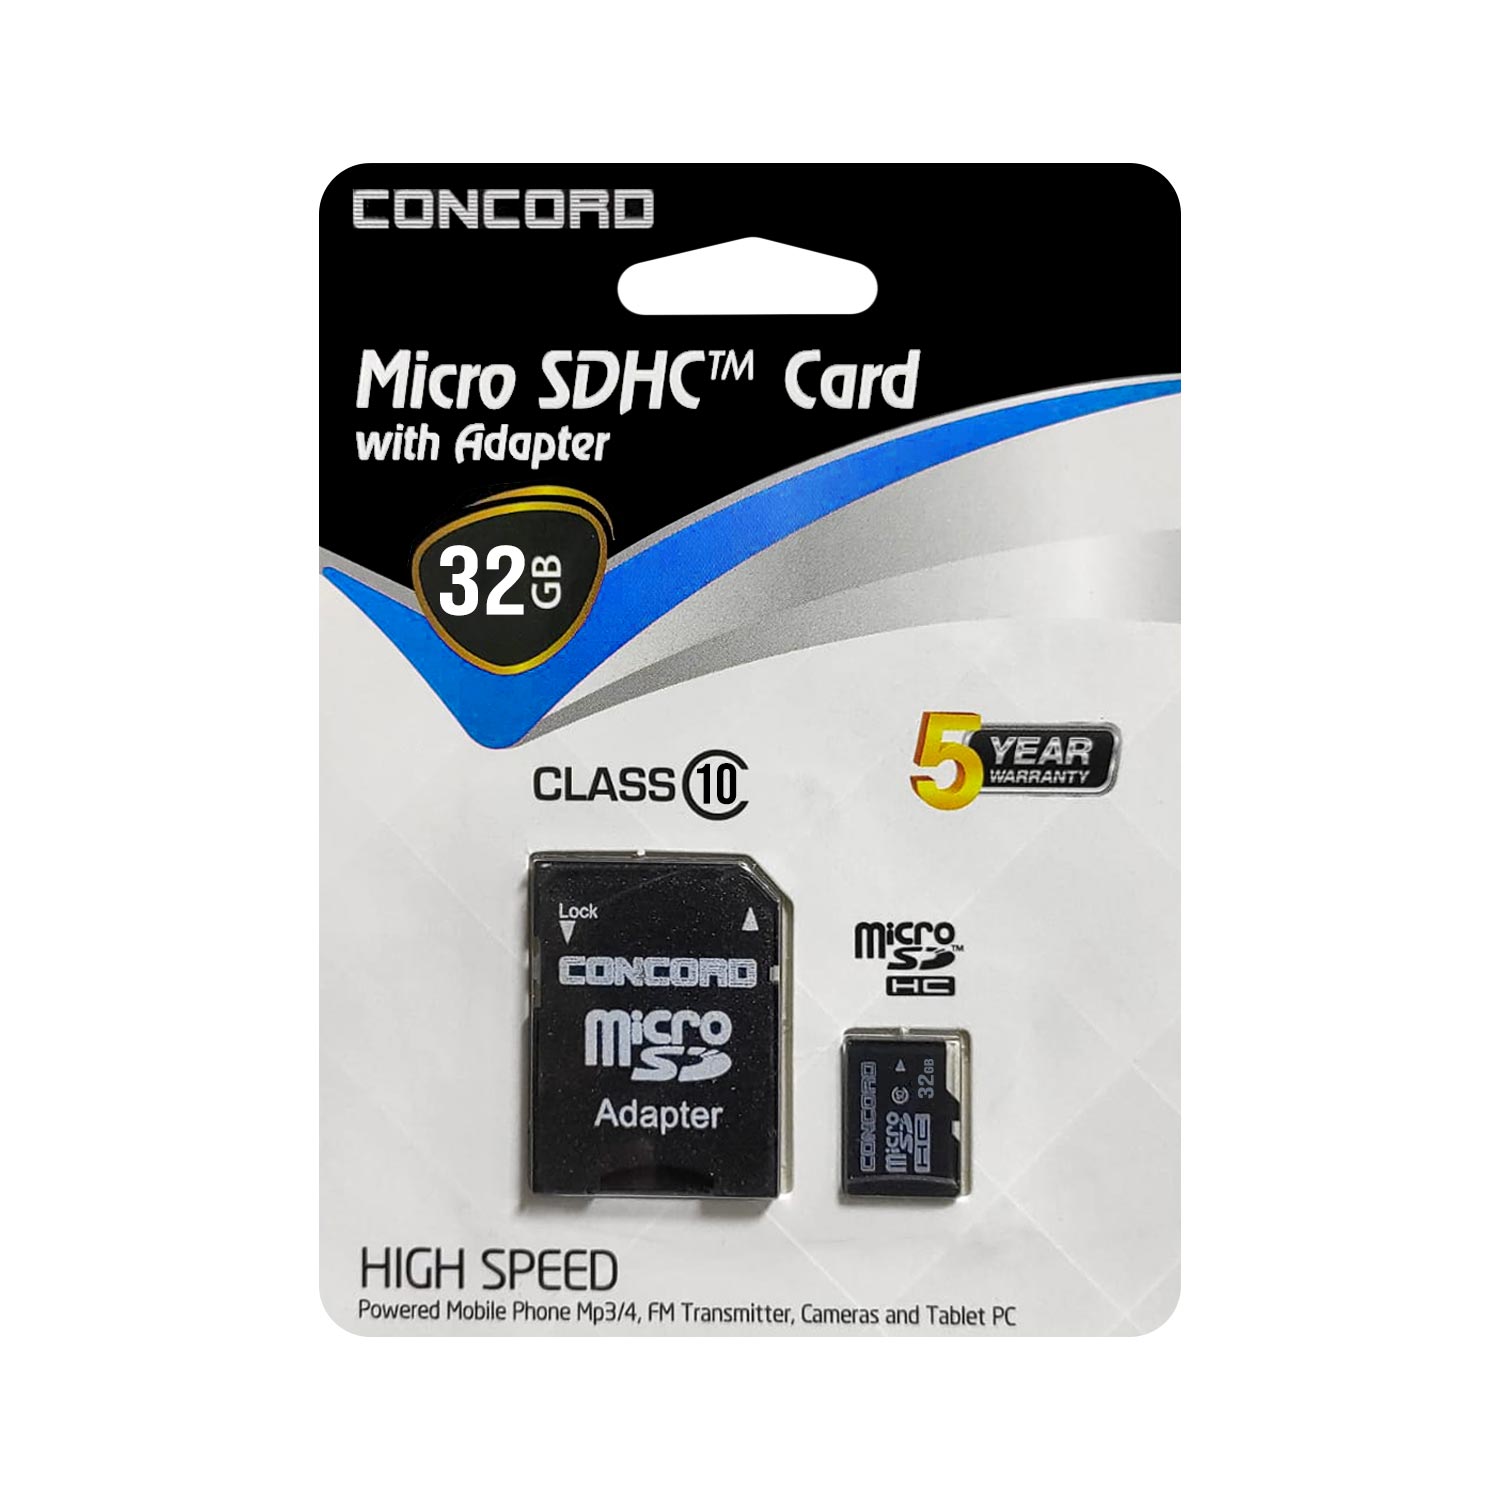 HAFIZA KARTI 32GB MİCRO SD CLASS10 CONCORD C-M32